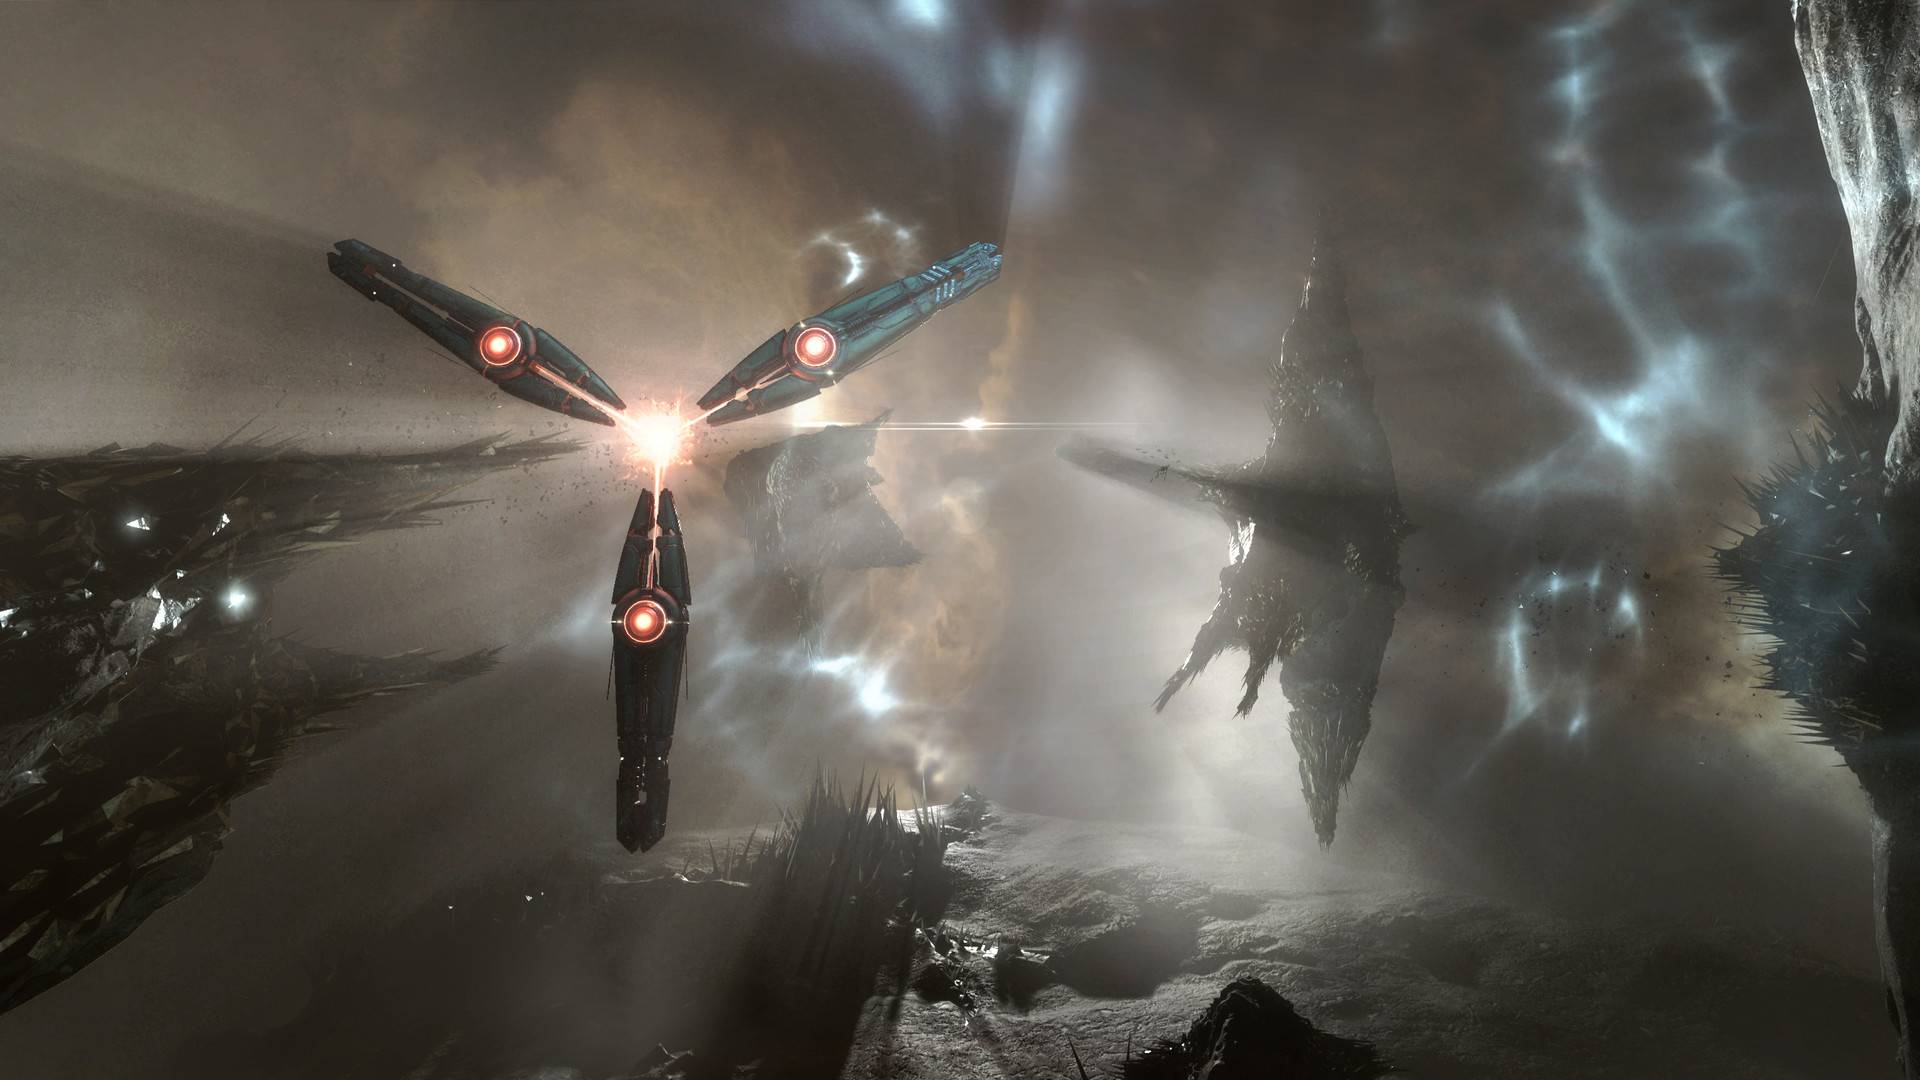 เกม MMORPG ที่ดีที่สุด: อีฟออนไลน์ ภาพแสดงเรืออื่น ๆ ที่บินผ่านอวกาศ